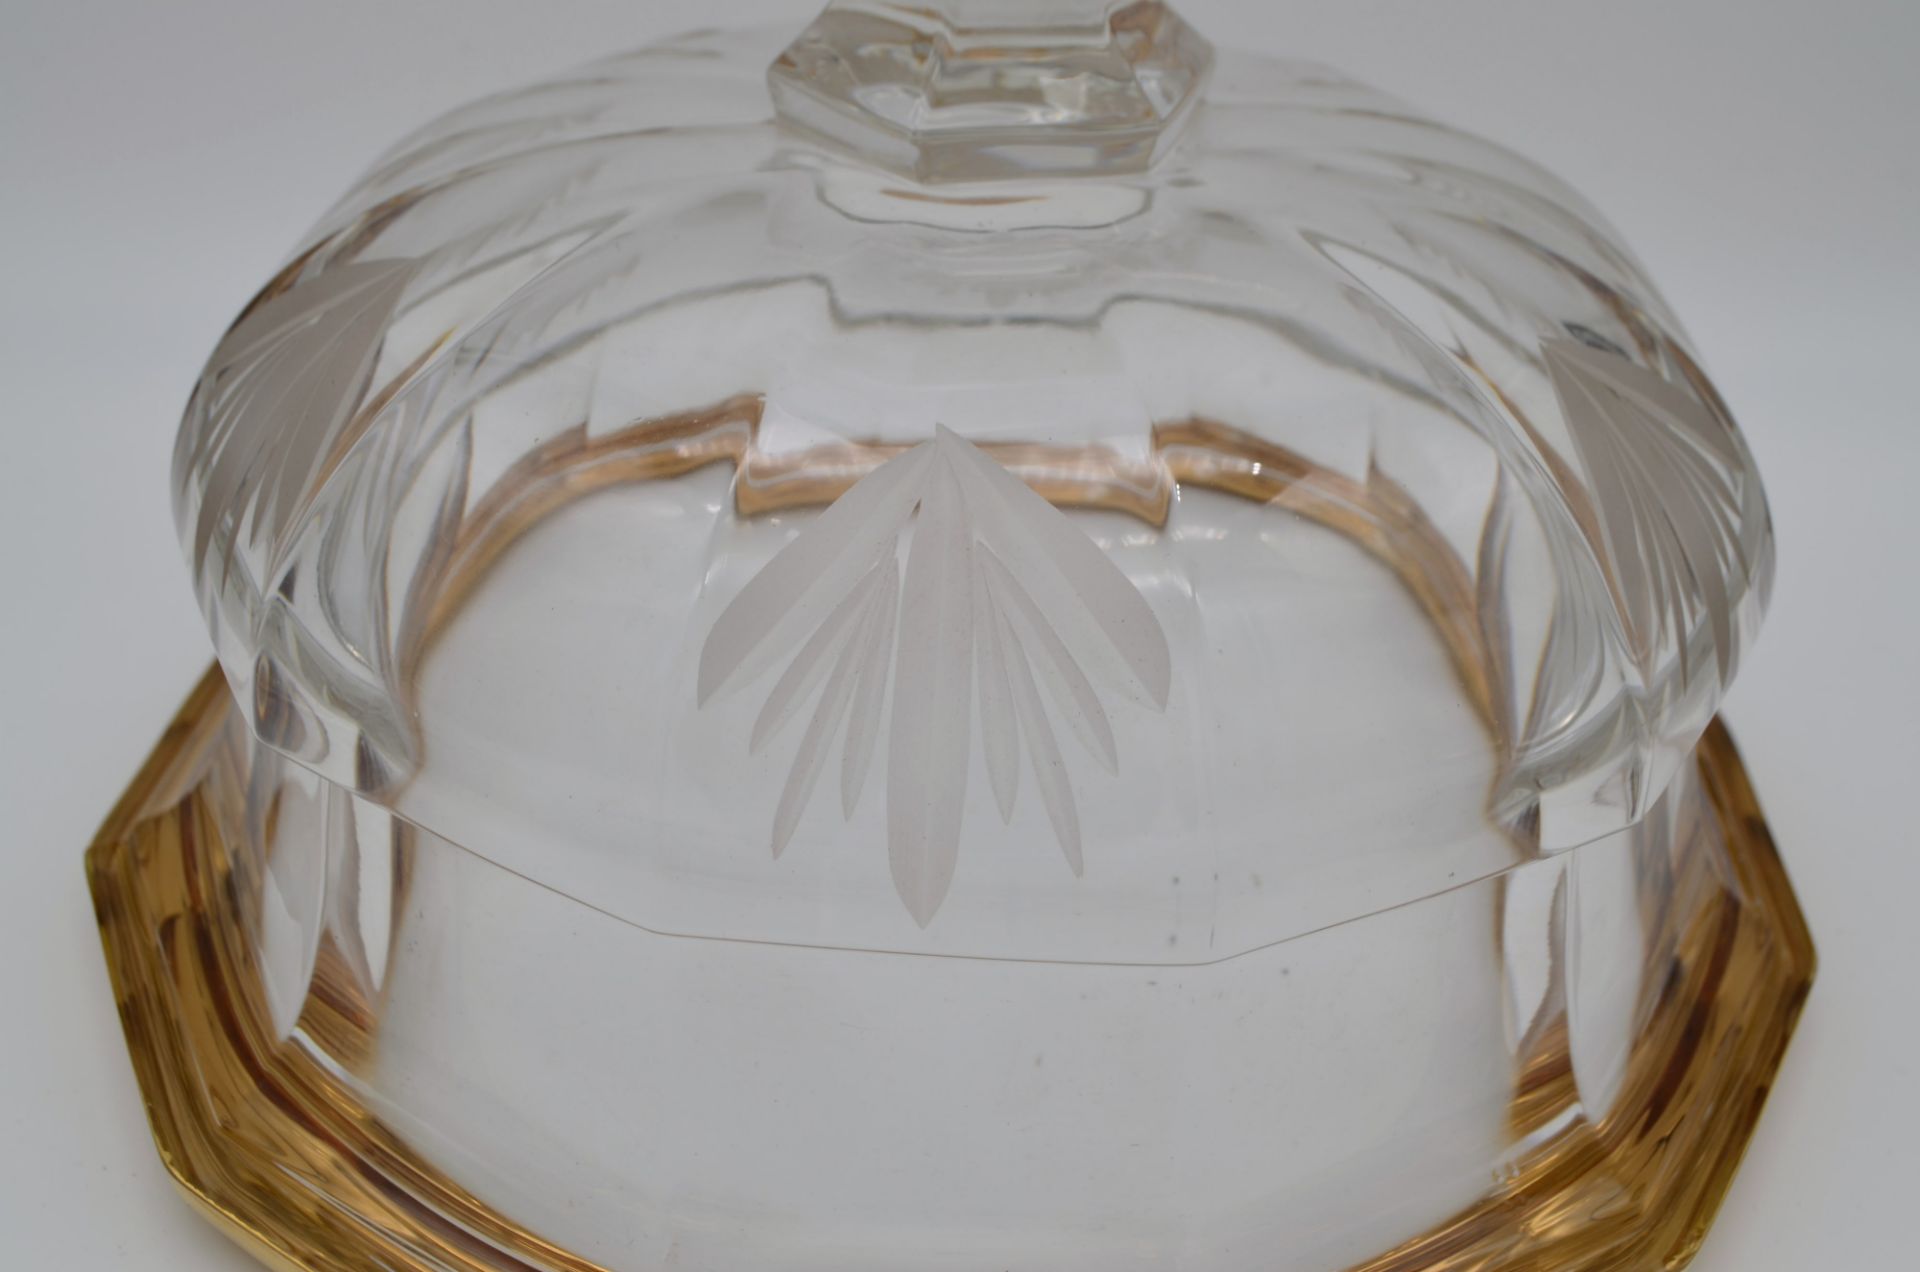 Coupe à fruits en cristal Artisanat de Lorraine 20e siècle - Image 3 of 3